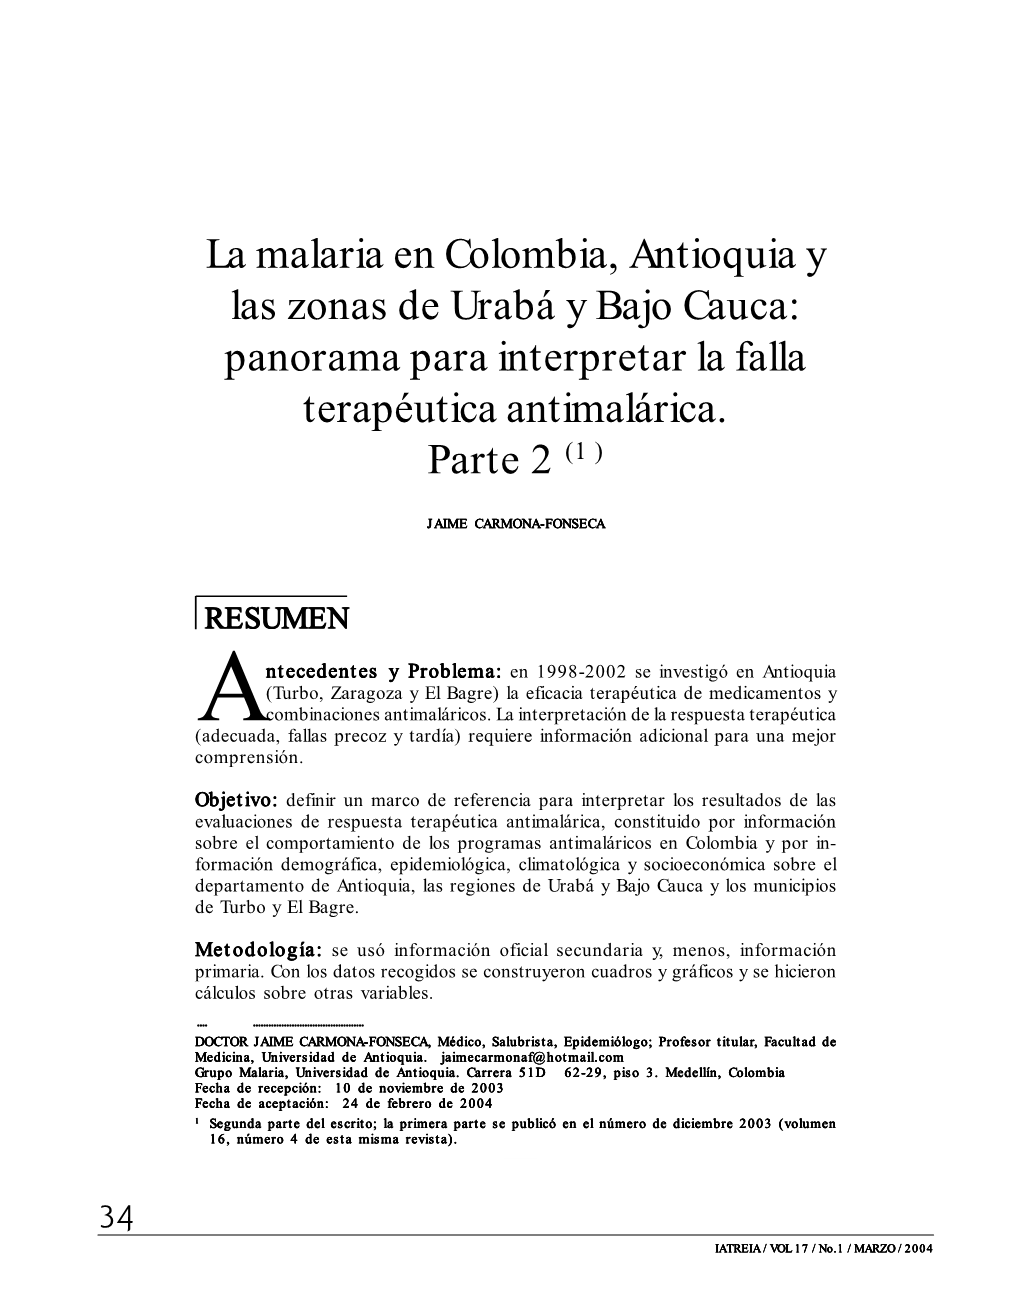 La Malaria En Colombia, Antioquia Y Las Zonas De Urabá Y Bajo Cauca: Panorama Para Interpretar La Falla Terapéutica Antimalárica